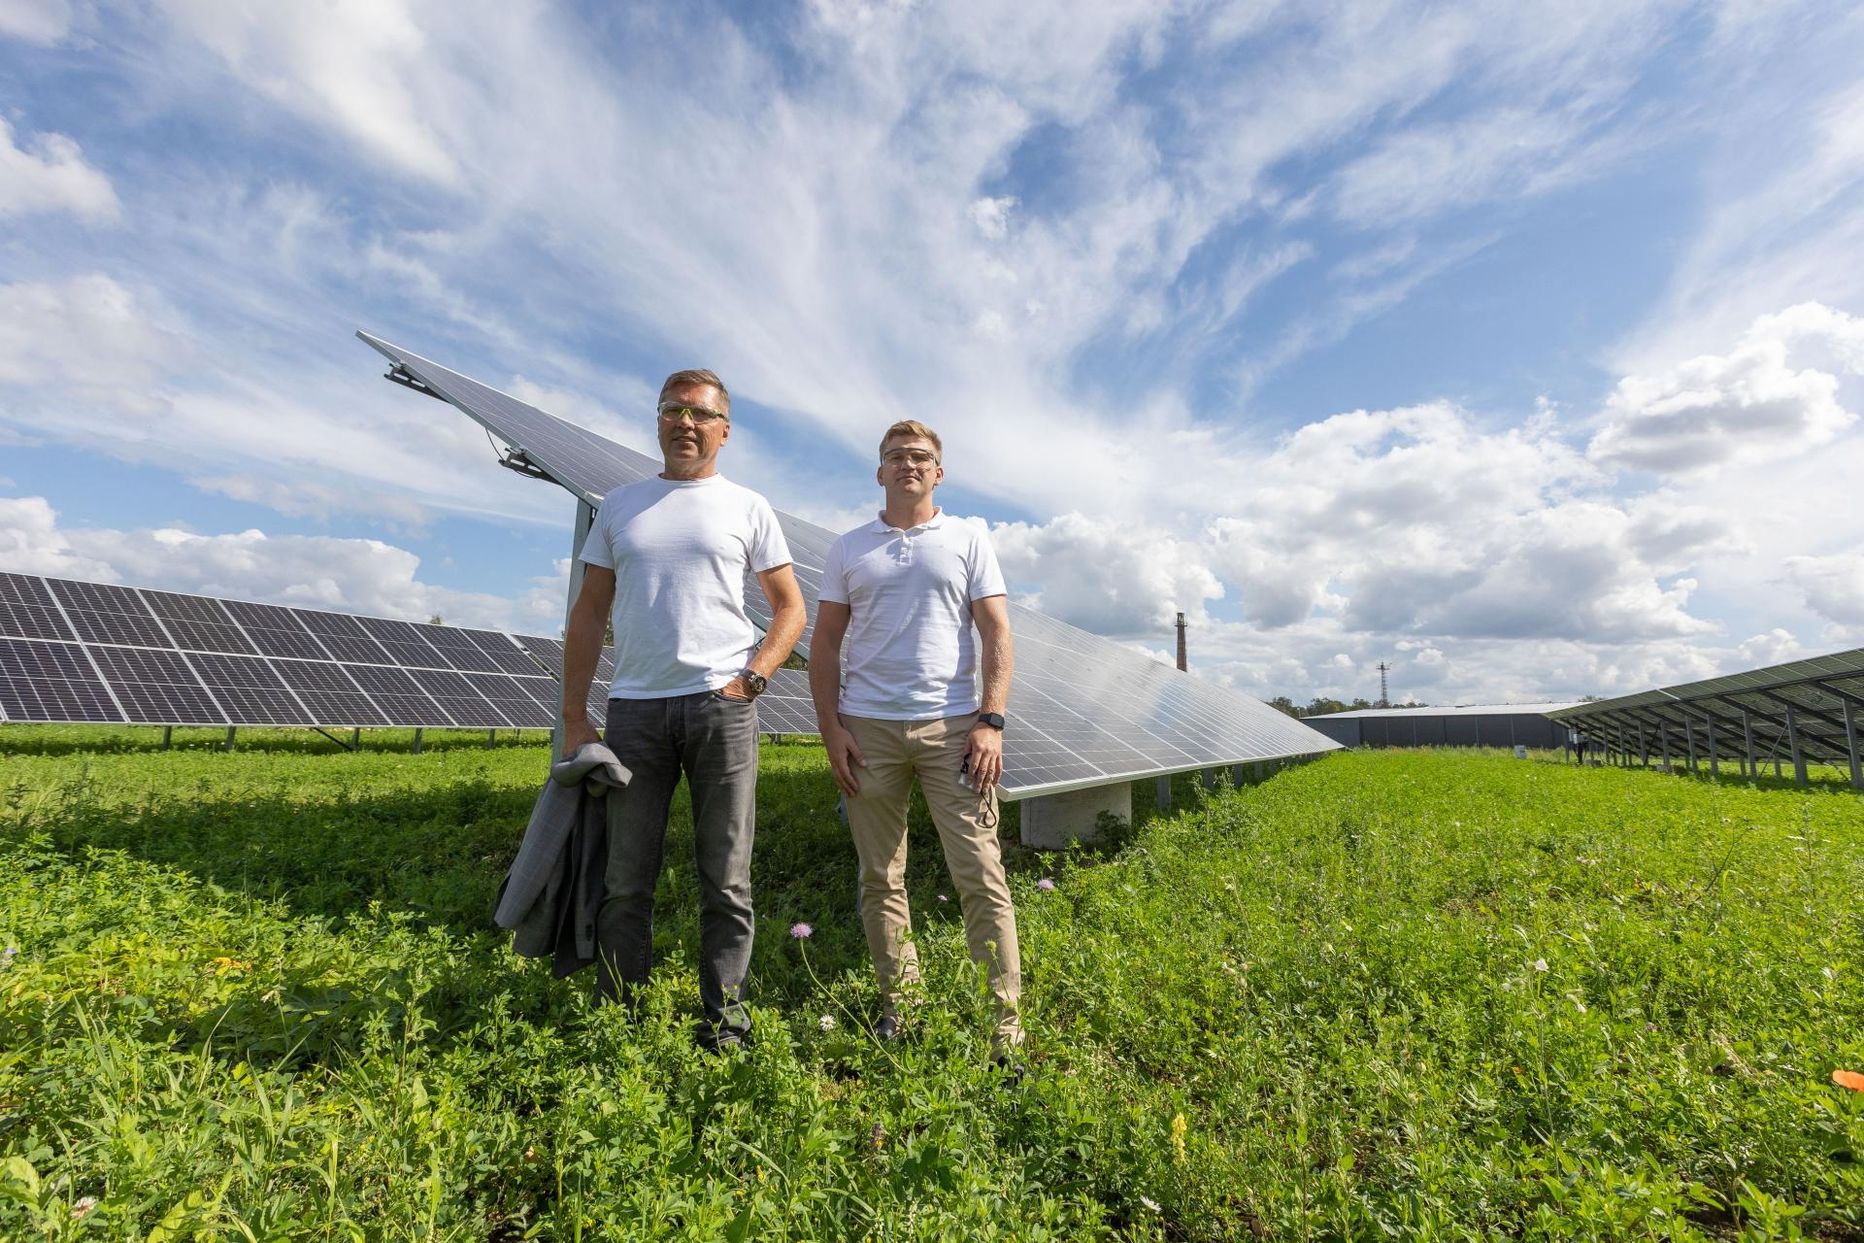 Esimesed päikesepaneelid paigaldas Konesko Koeru tehase katusele üheksa aastat tagasi, päikesepark põlluserval, kus Mart (vasakul) ja Marek Hirtentreu seisavad, valmis aprillis­.